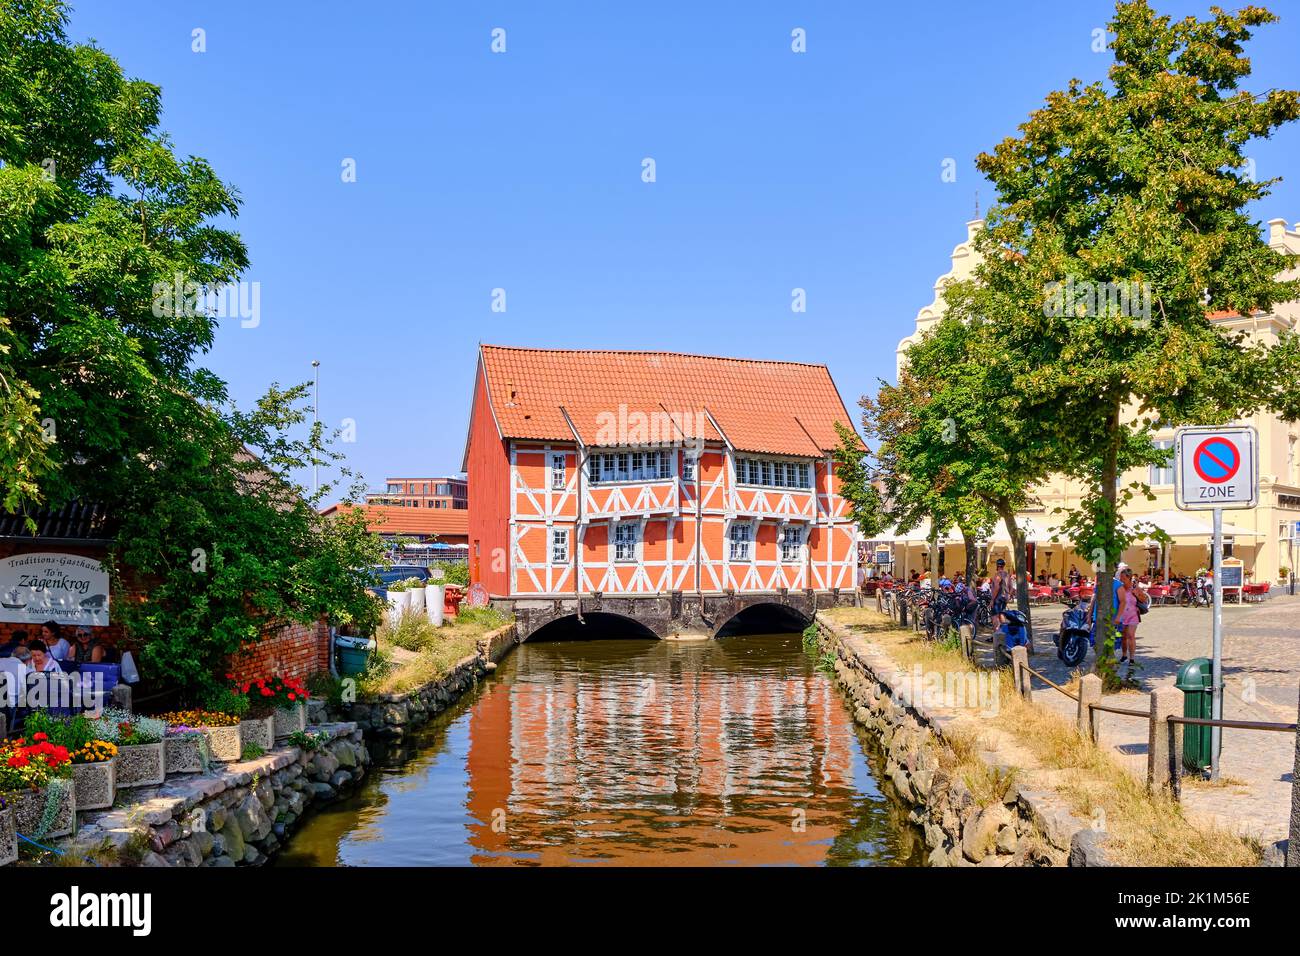 Scène de jardin de bière et ce qu'on appelle Gewölbe (la voûte), ville hanséatique de Wismar, Mecklenburg-Poméranie occidentale, Allemagne, Europe, 8 août, 2020. Banque D'Images